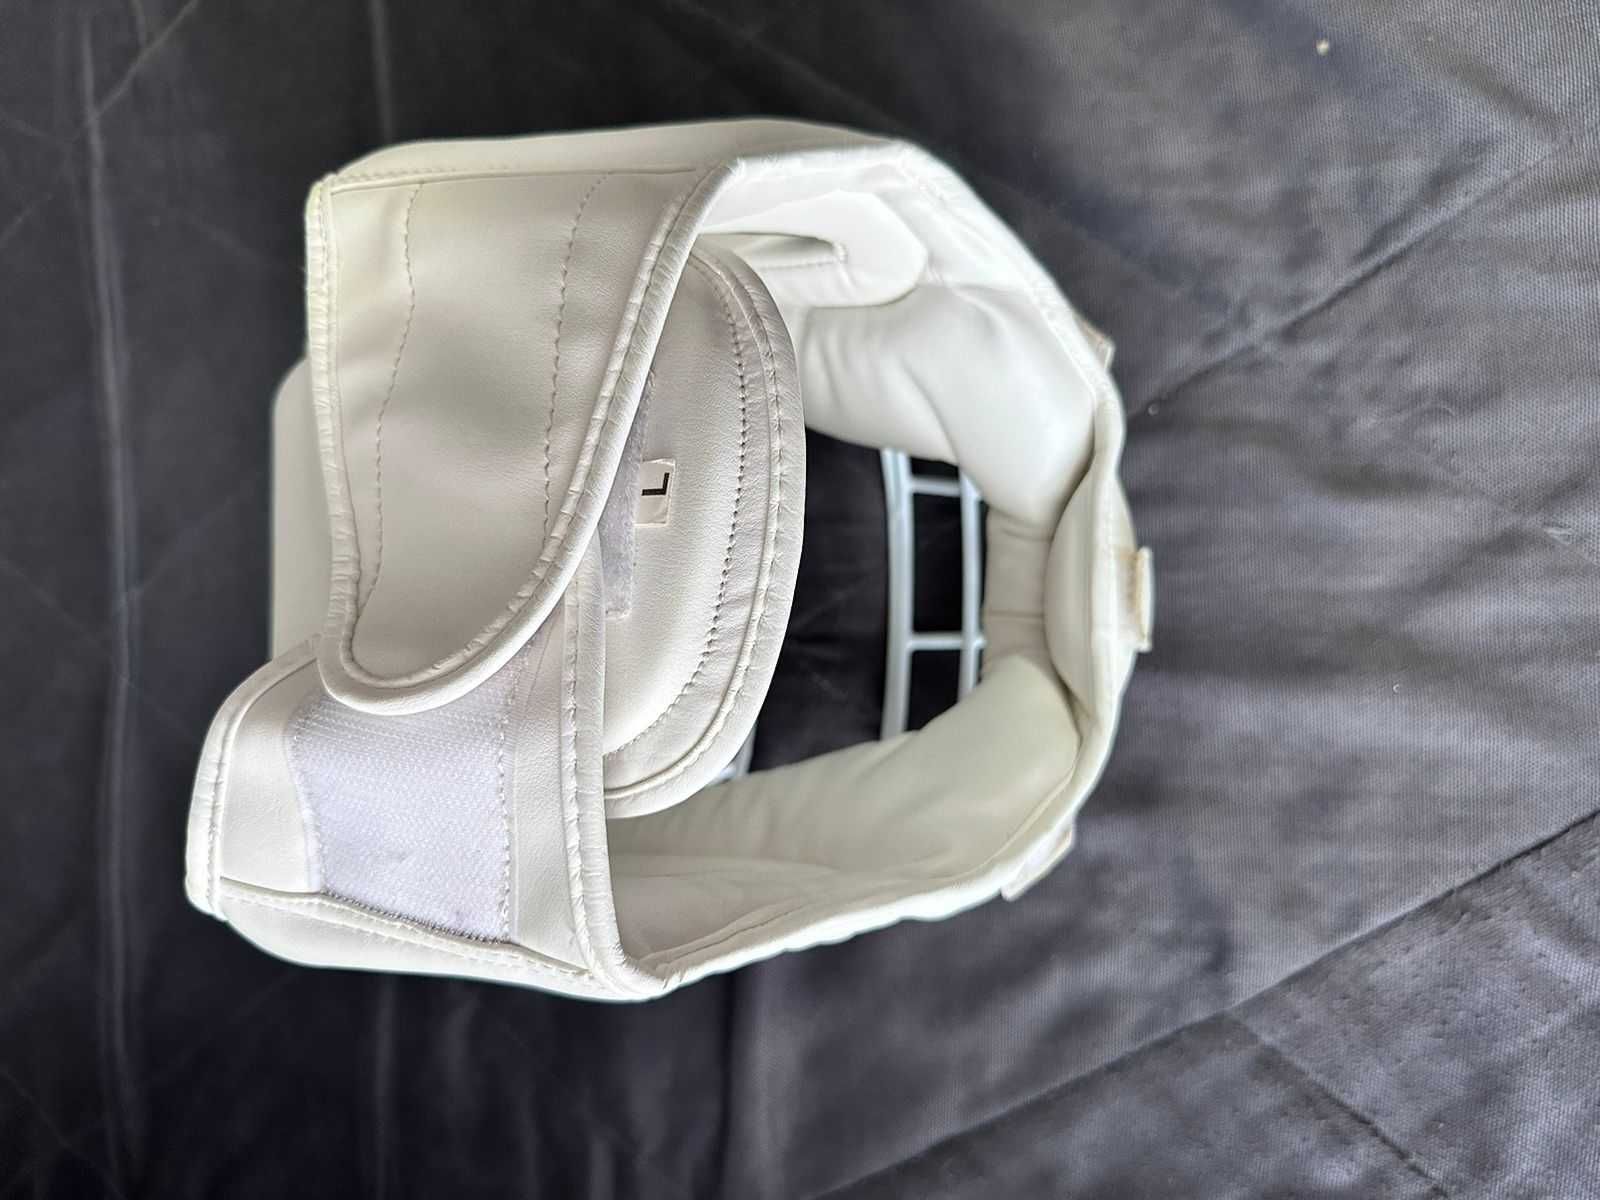 Шлем защитный для каратэ